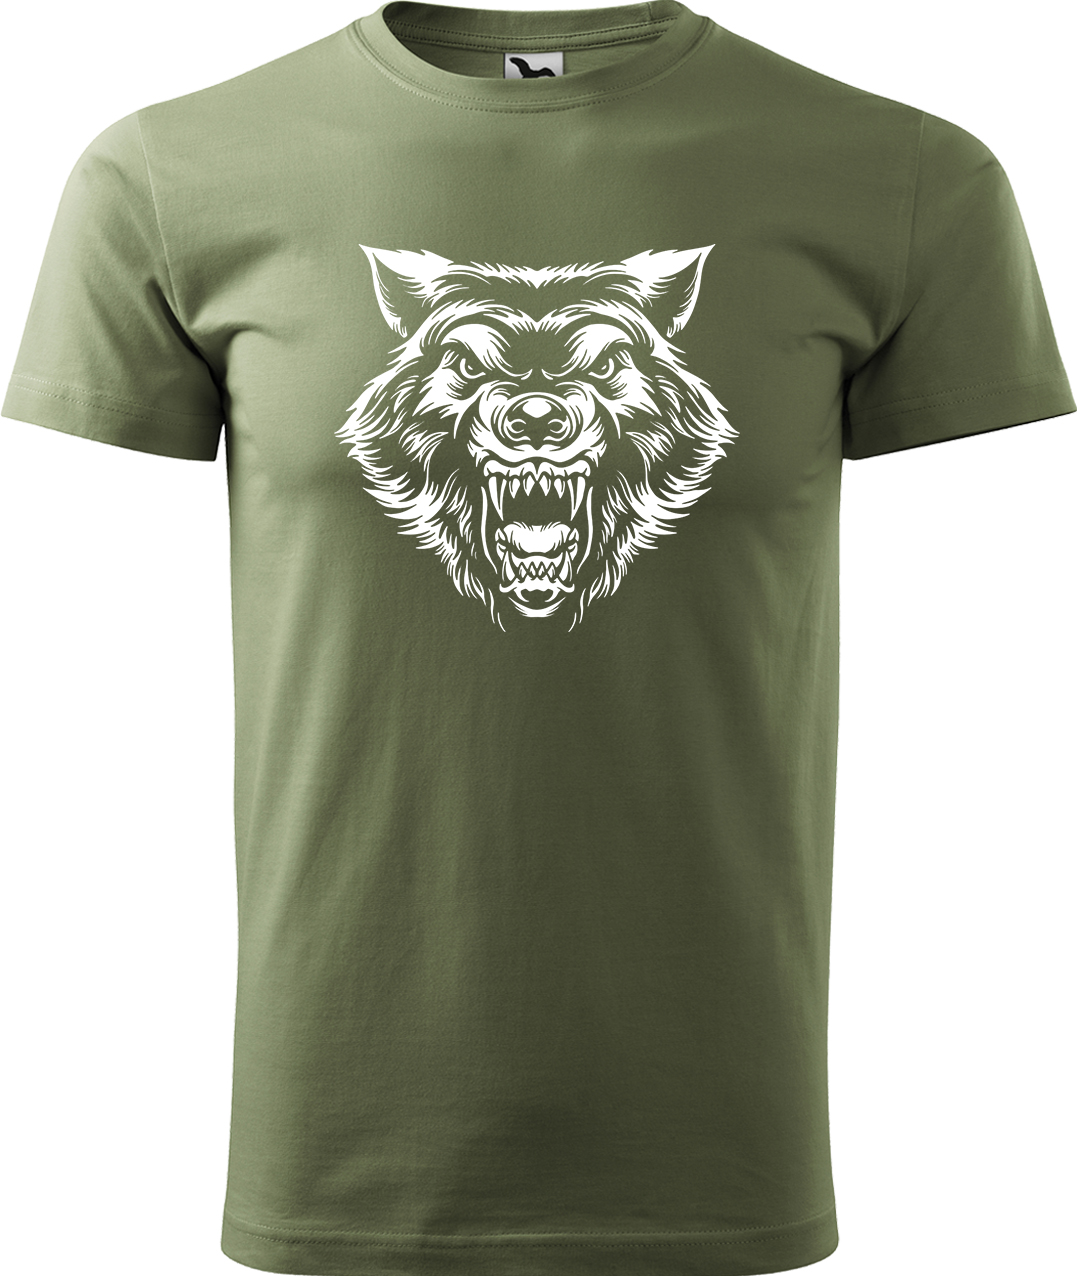 Pánské tričko s vlkem - Rozzuřený vlk Velikost: 4XL, Barva: Světlá khaki (28)